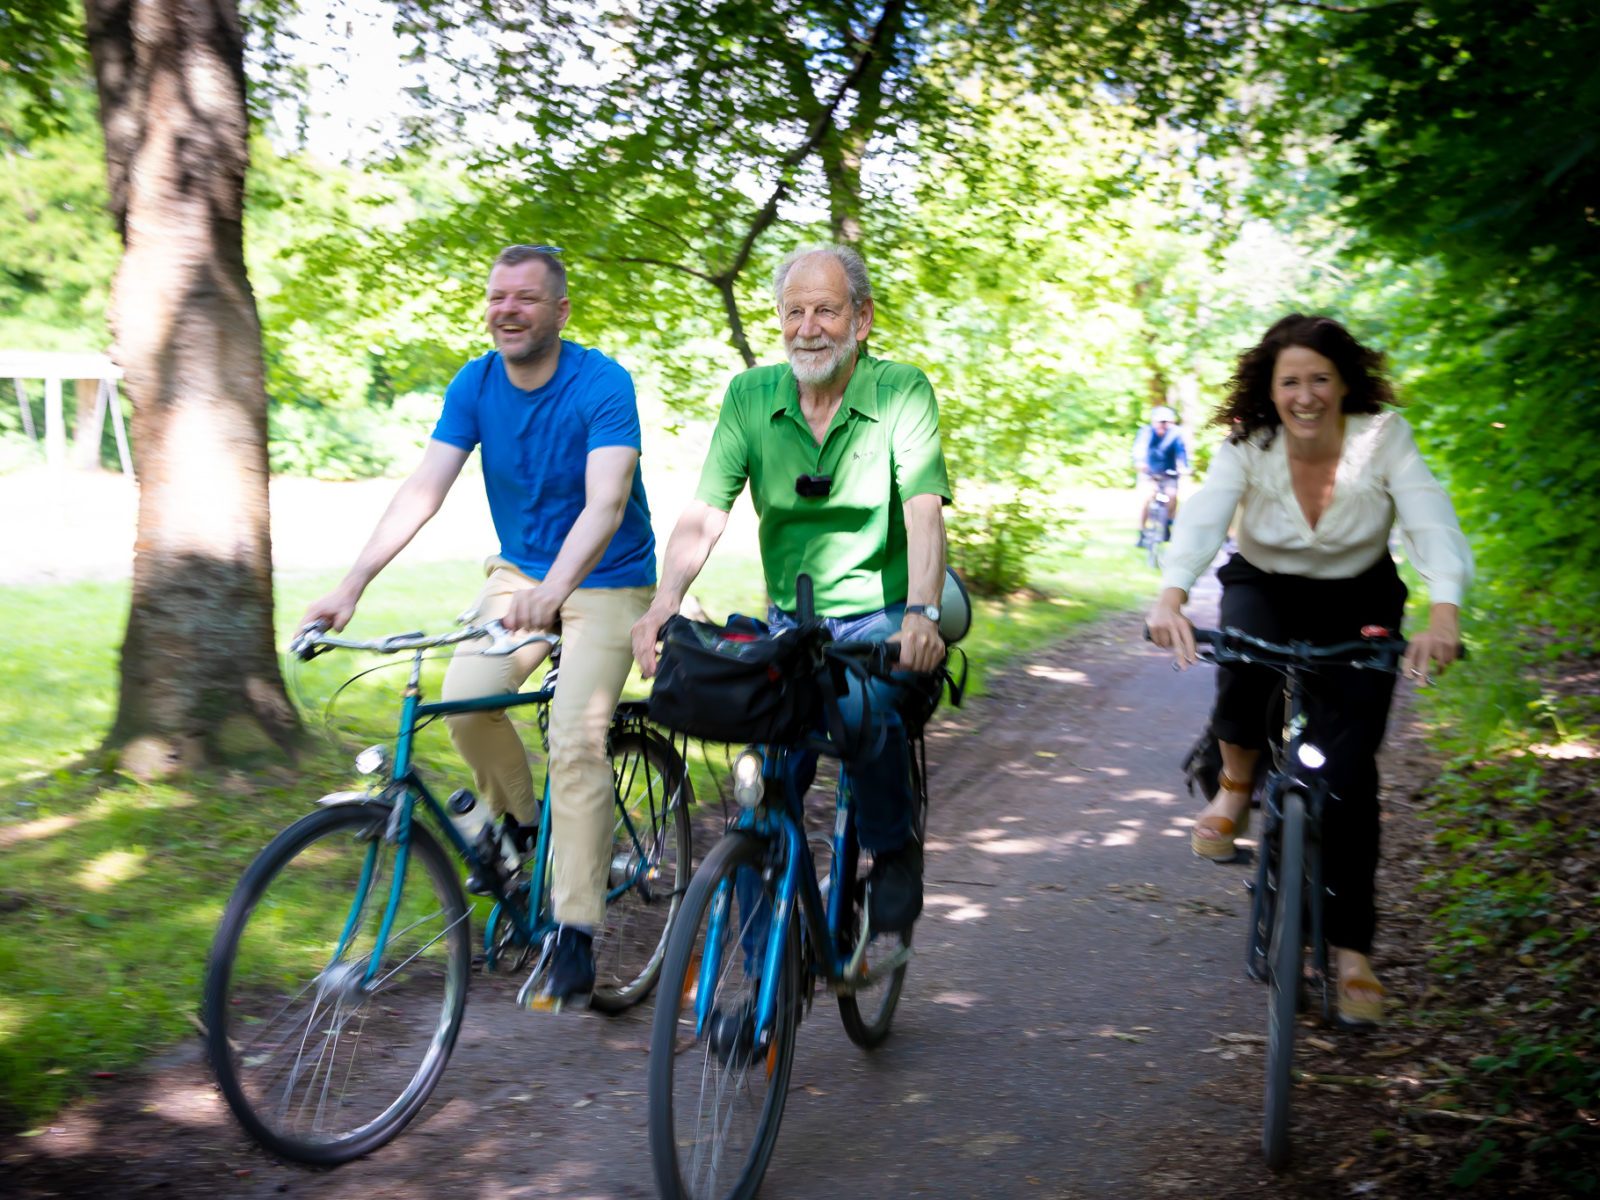 Das Bild zeigt drei Menschen. Sie fahren auf Fahrrädern durch einen Wald. Es handelt sich dabei von links nach rechts um den Fraktionsvorsitzenden Werner Graf, den ehemaligen Abgeordnteten Michael Cramer und die Fraktionsvorsitzende Bettina Jarasch.